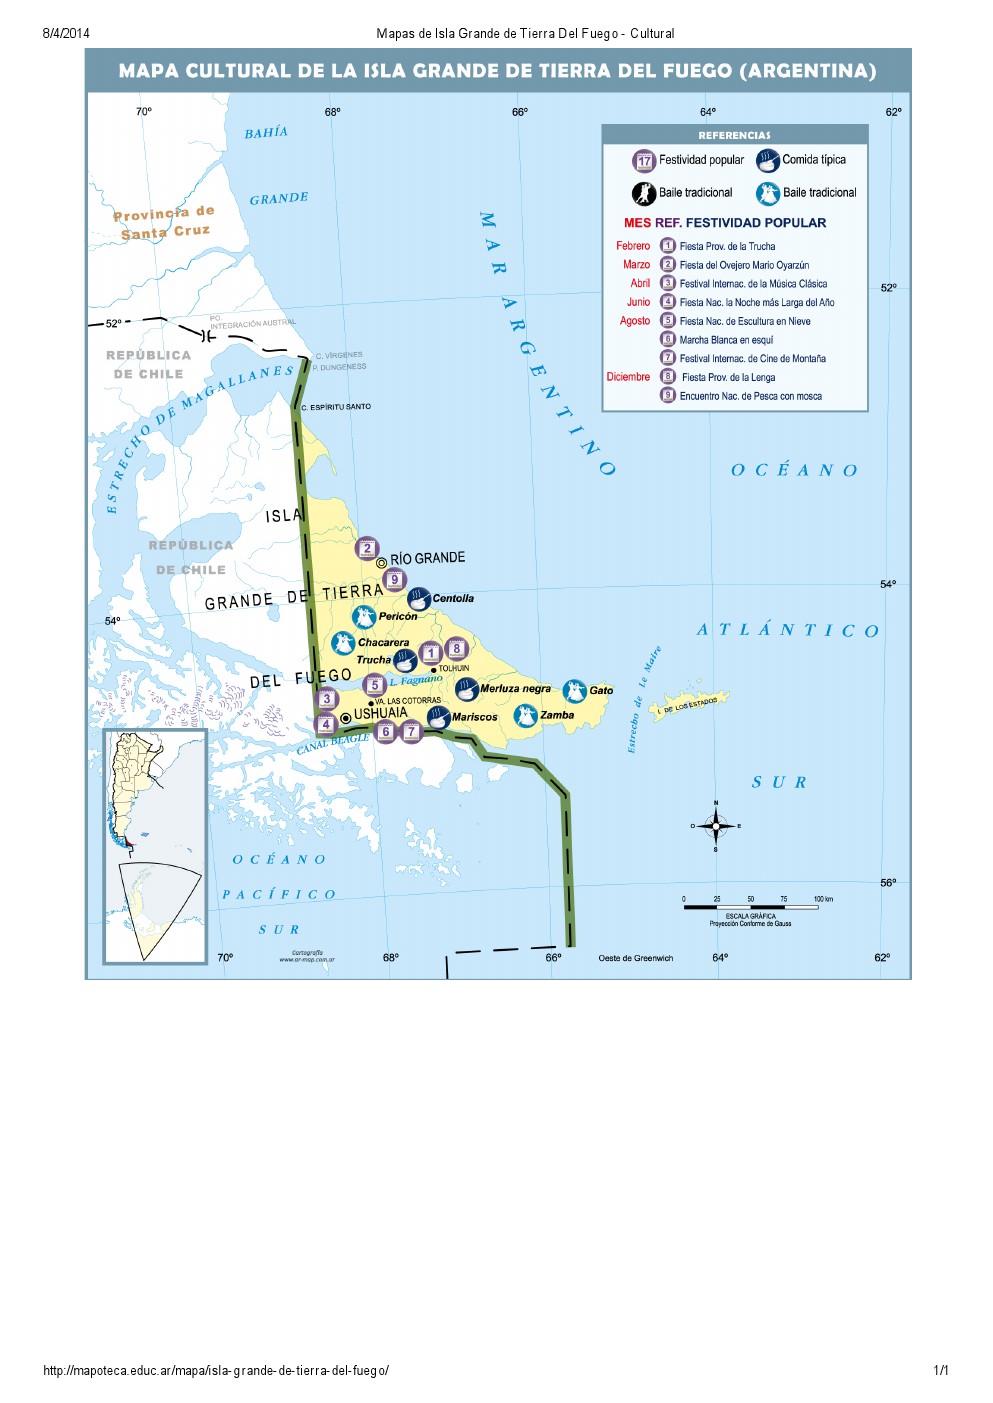 Mapa cultural de Isla Grande de Tierra del Fuego. Mapoteca de Educ.ar